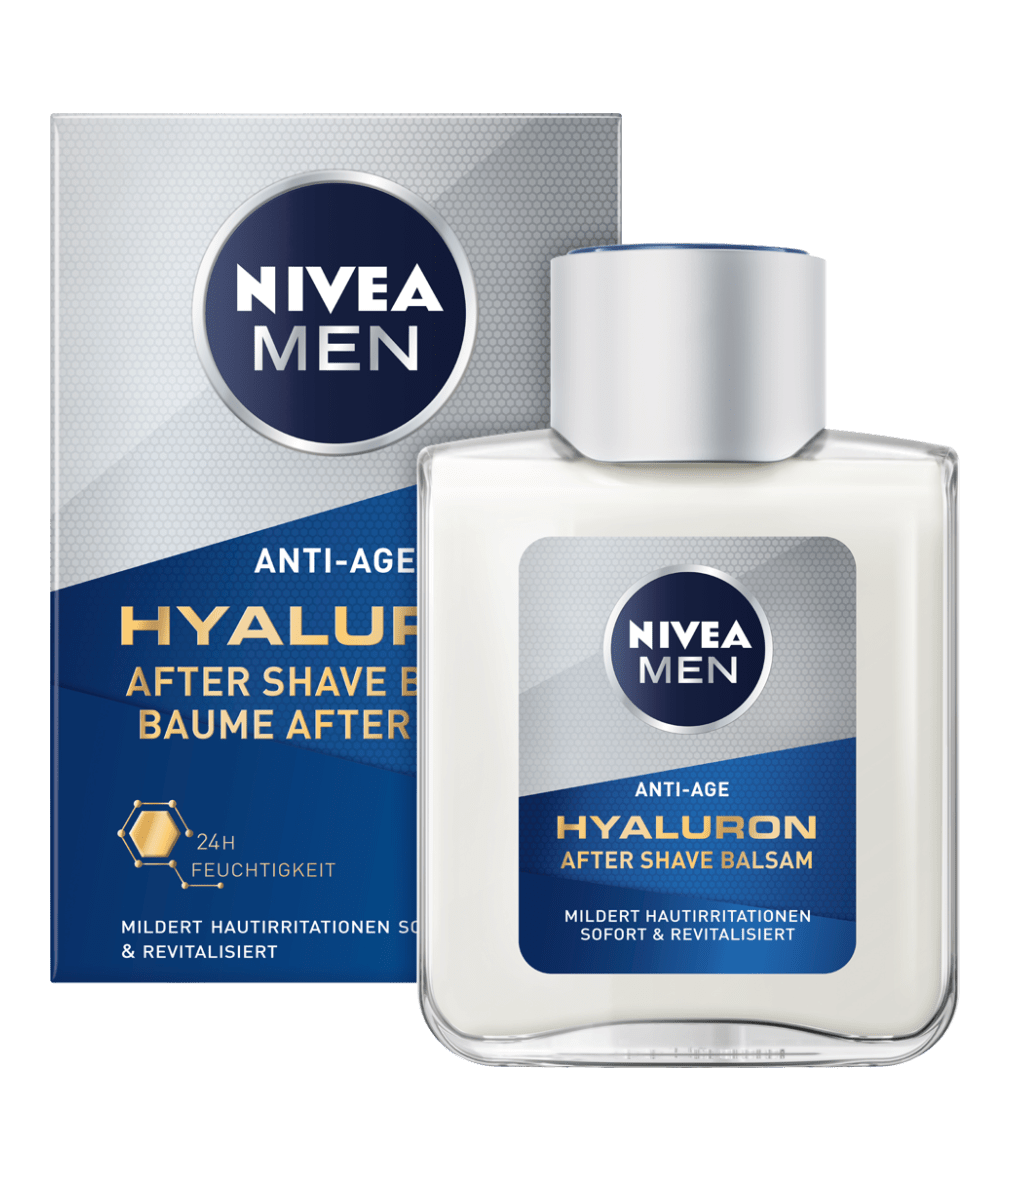 NIVEA MEN Anti-Age Hyaluron After Shave Balsam_100ml